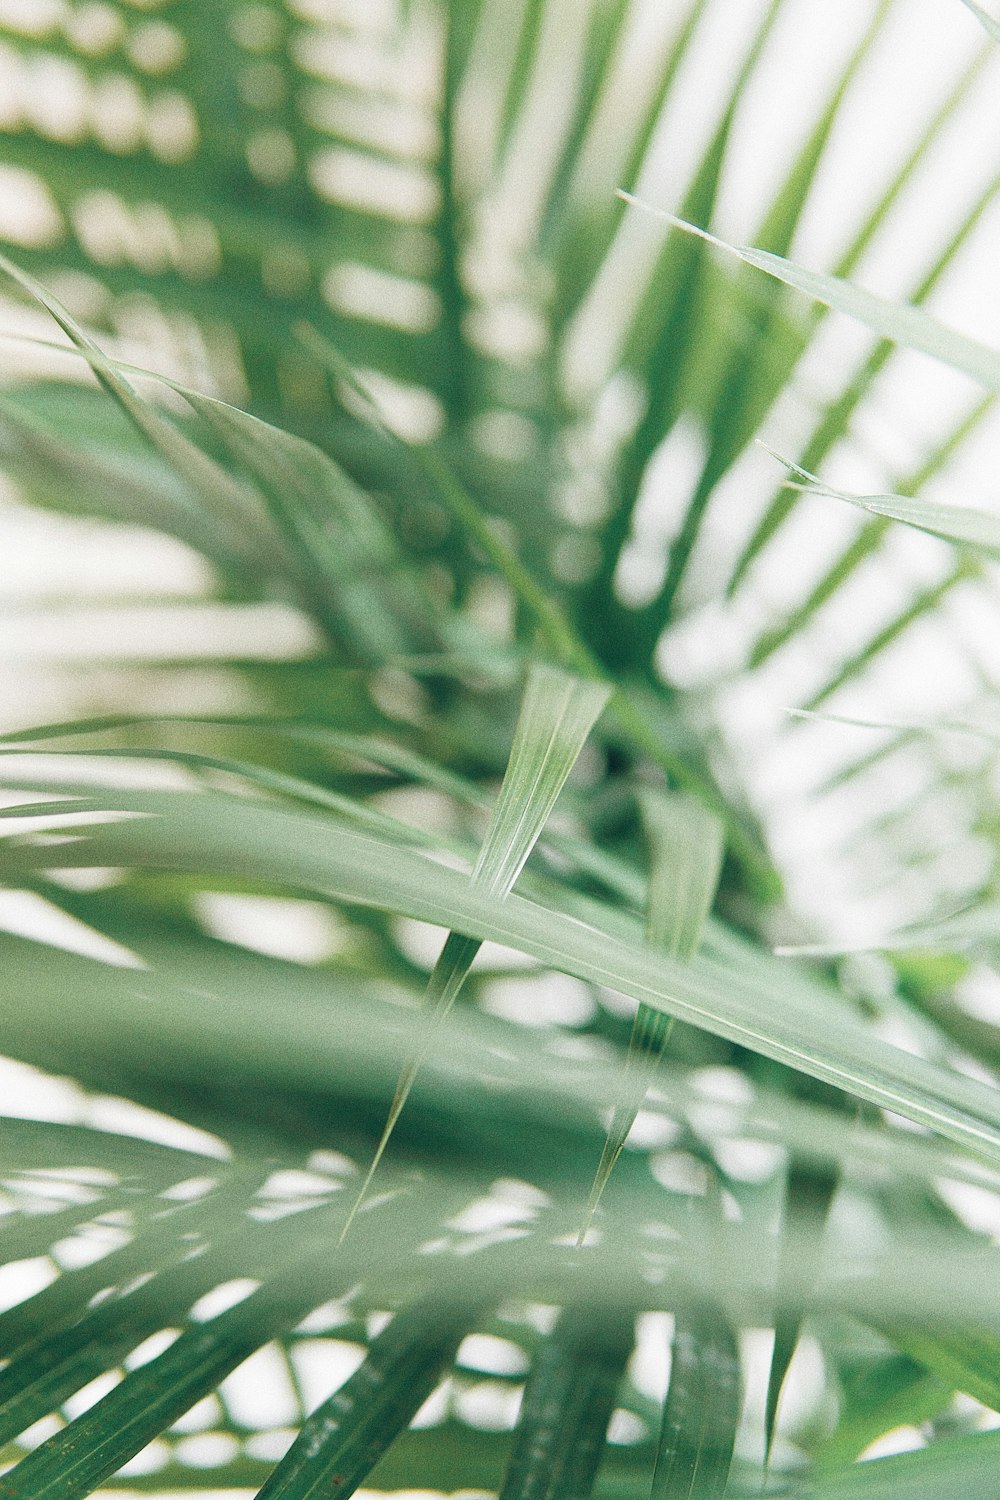 Photographie en gros plan de feuilles de palmier vertes